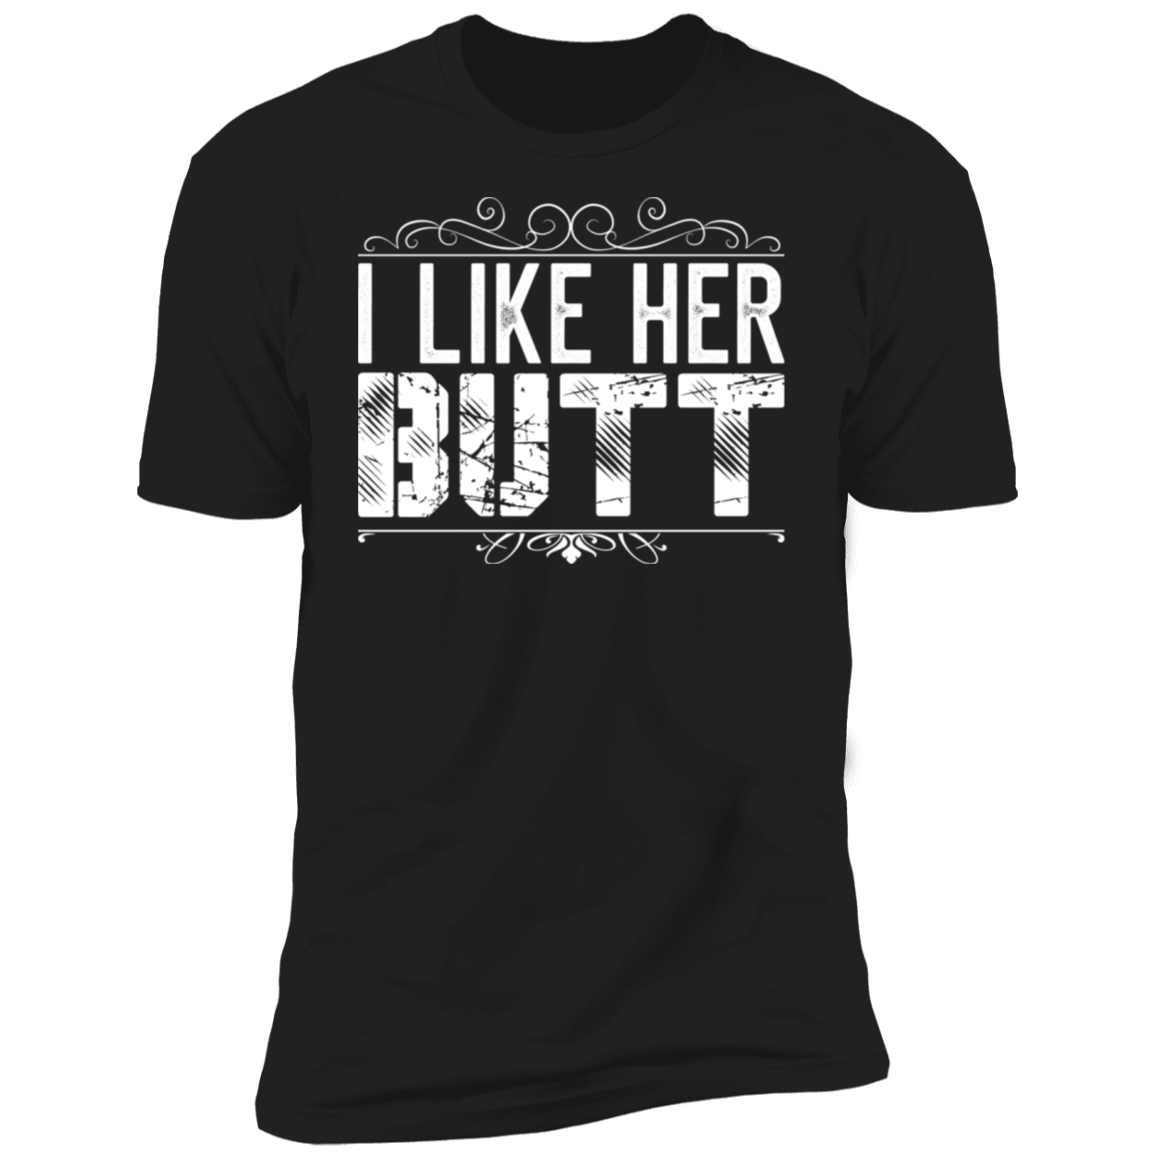 I like her butt